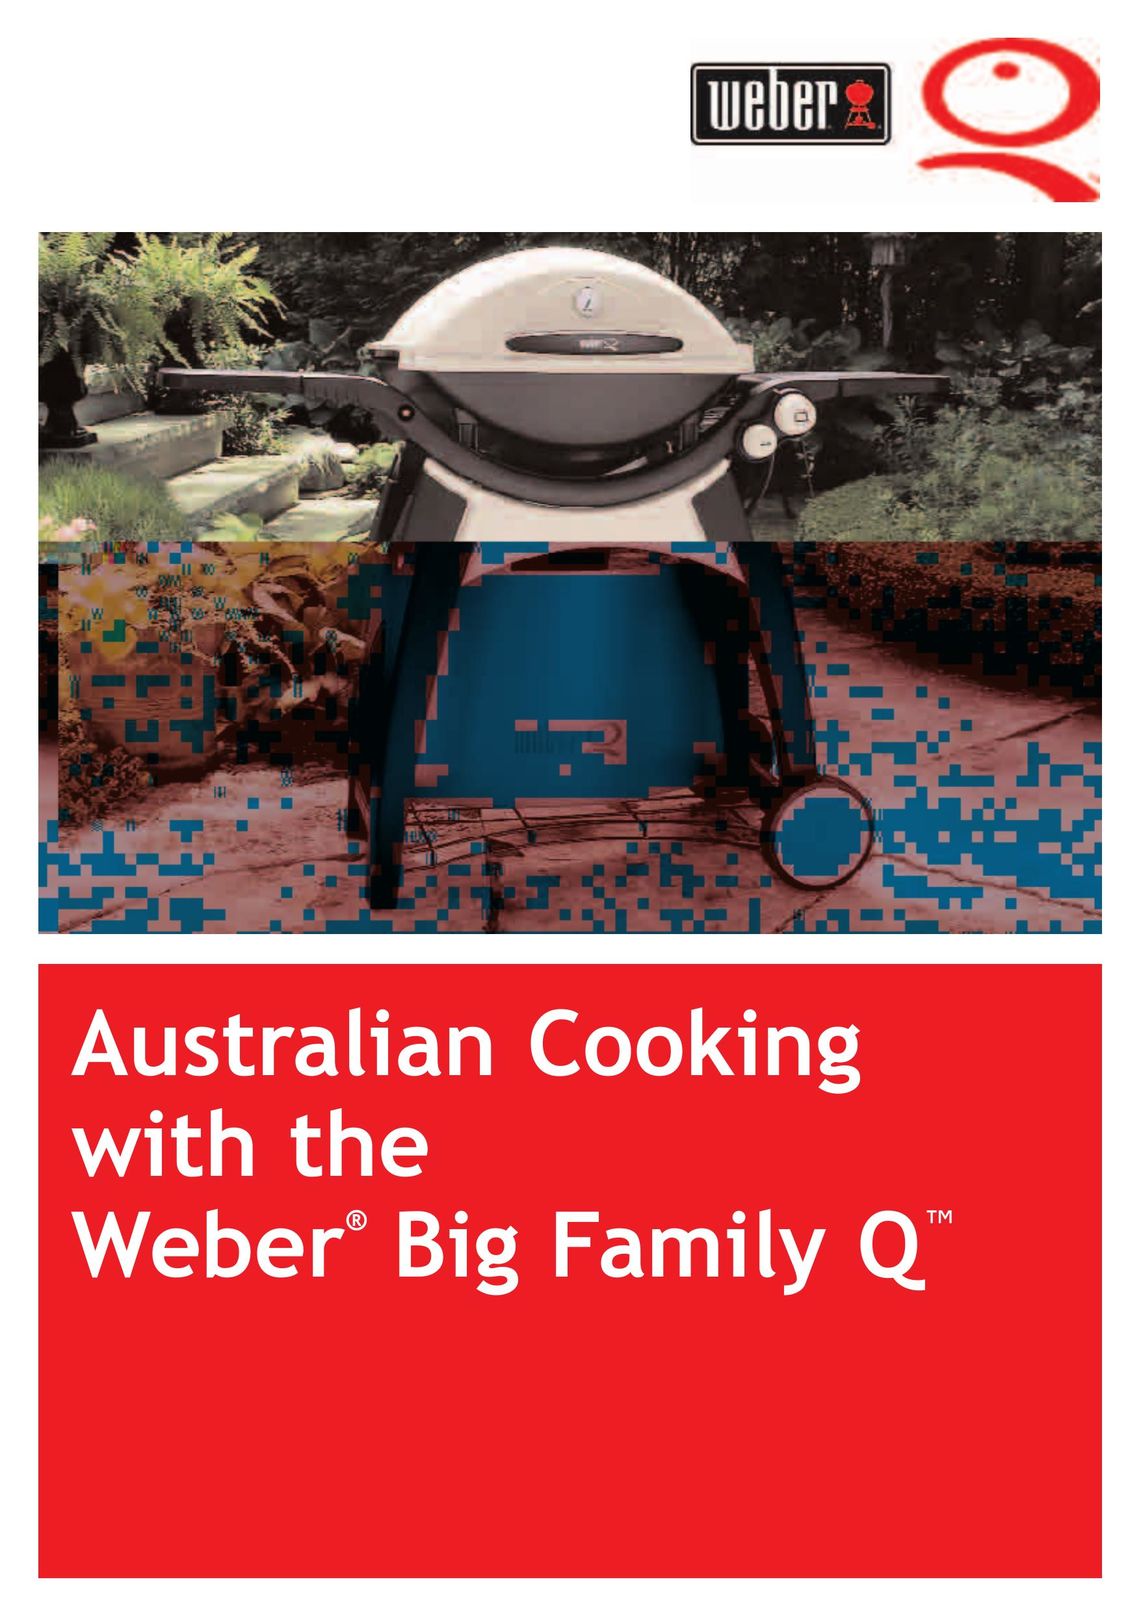 Weber Big Family QTM Griddle User Manual